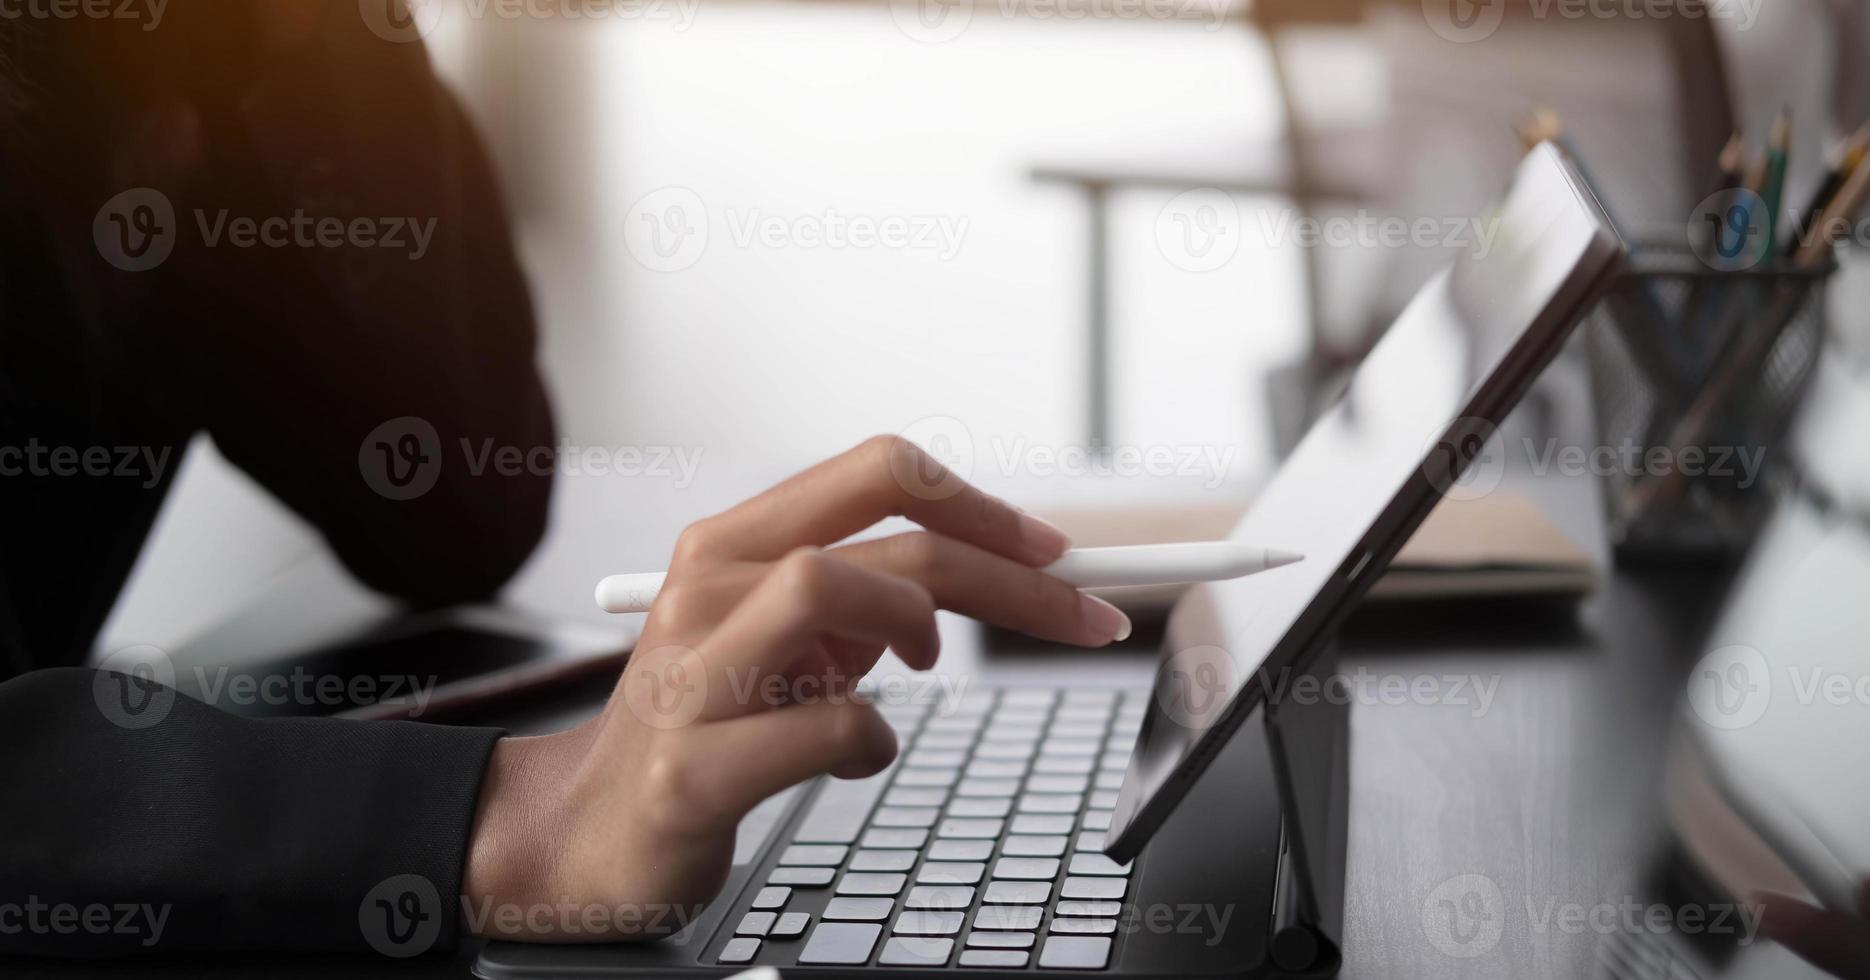 gros plan sur la main d'une femme avec un stylet écrivant sur un bloc-notes numérique, touchant l'écran d'une tablette numérique travaillant sur un ordinateur portable au bureau. web designer travaillant son projet. photo